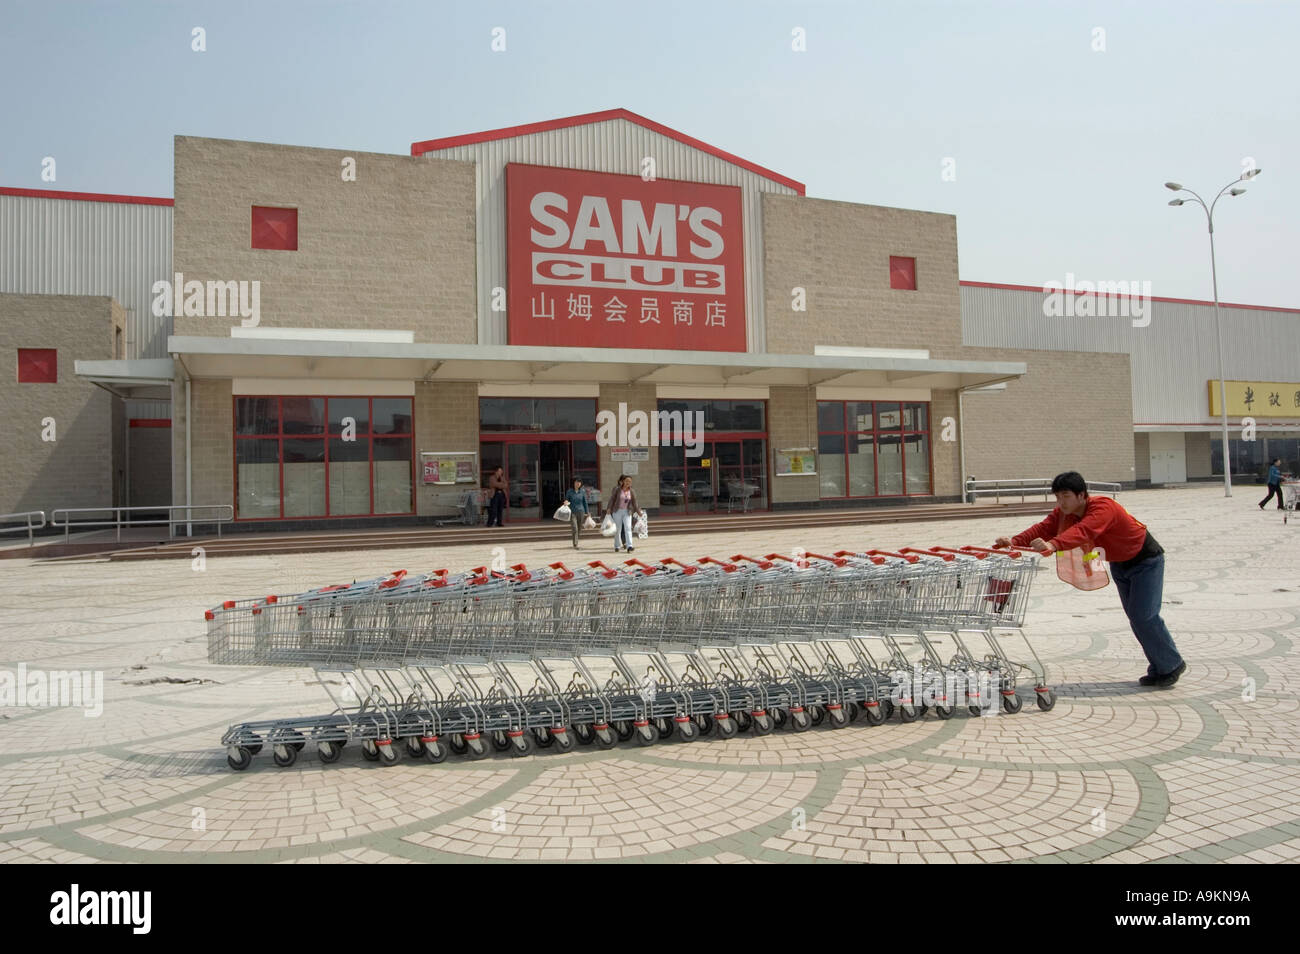 SAM S CLUB MEMBERSHIP DI SCONTO di supermercato che è parte della WAL MART società cinese di Pechino Foto Stock